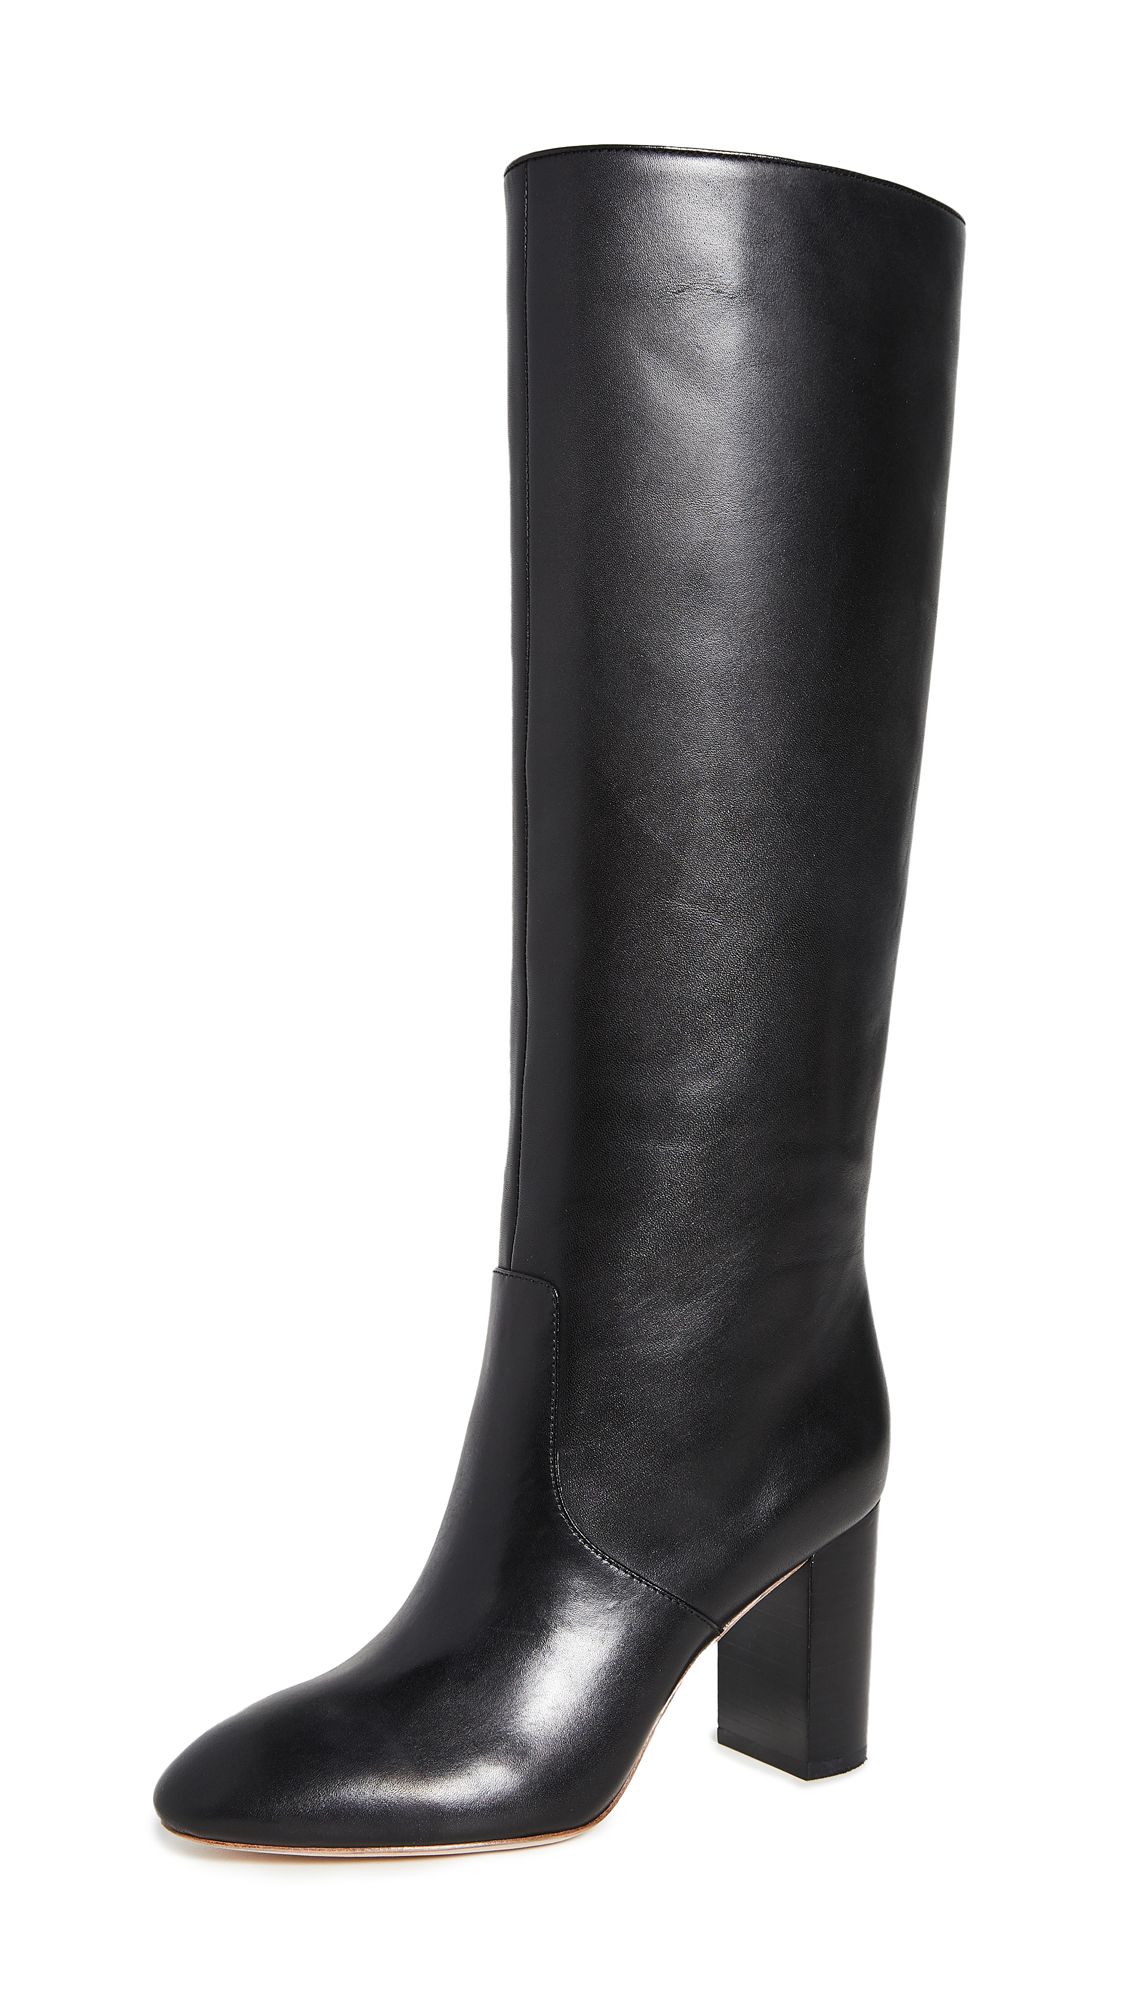 Loeffler Randall Goldy Tall Boots | Shopbop